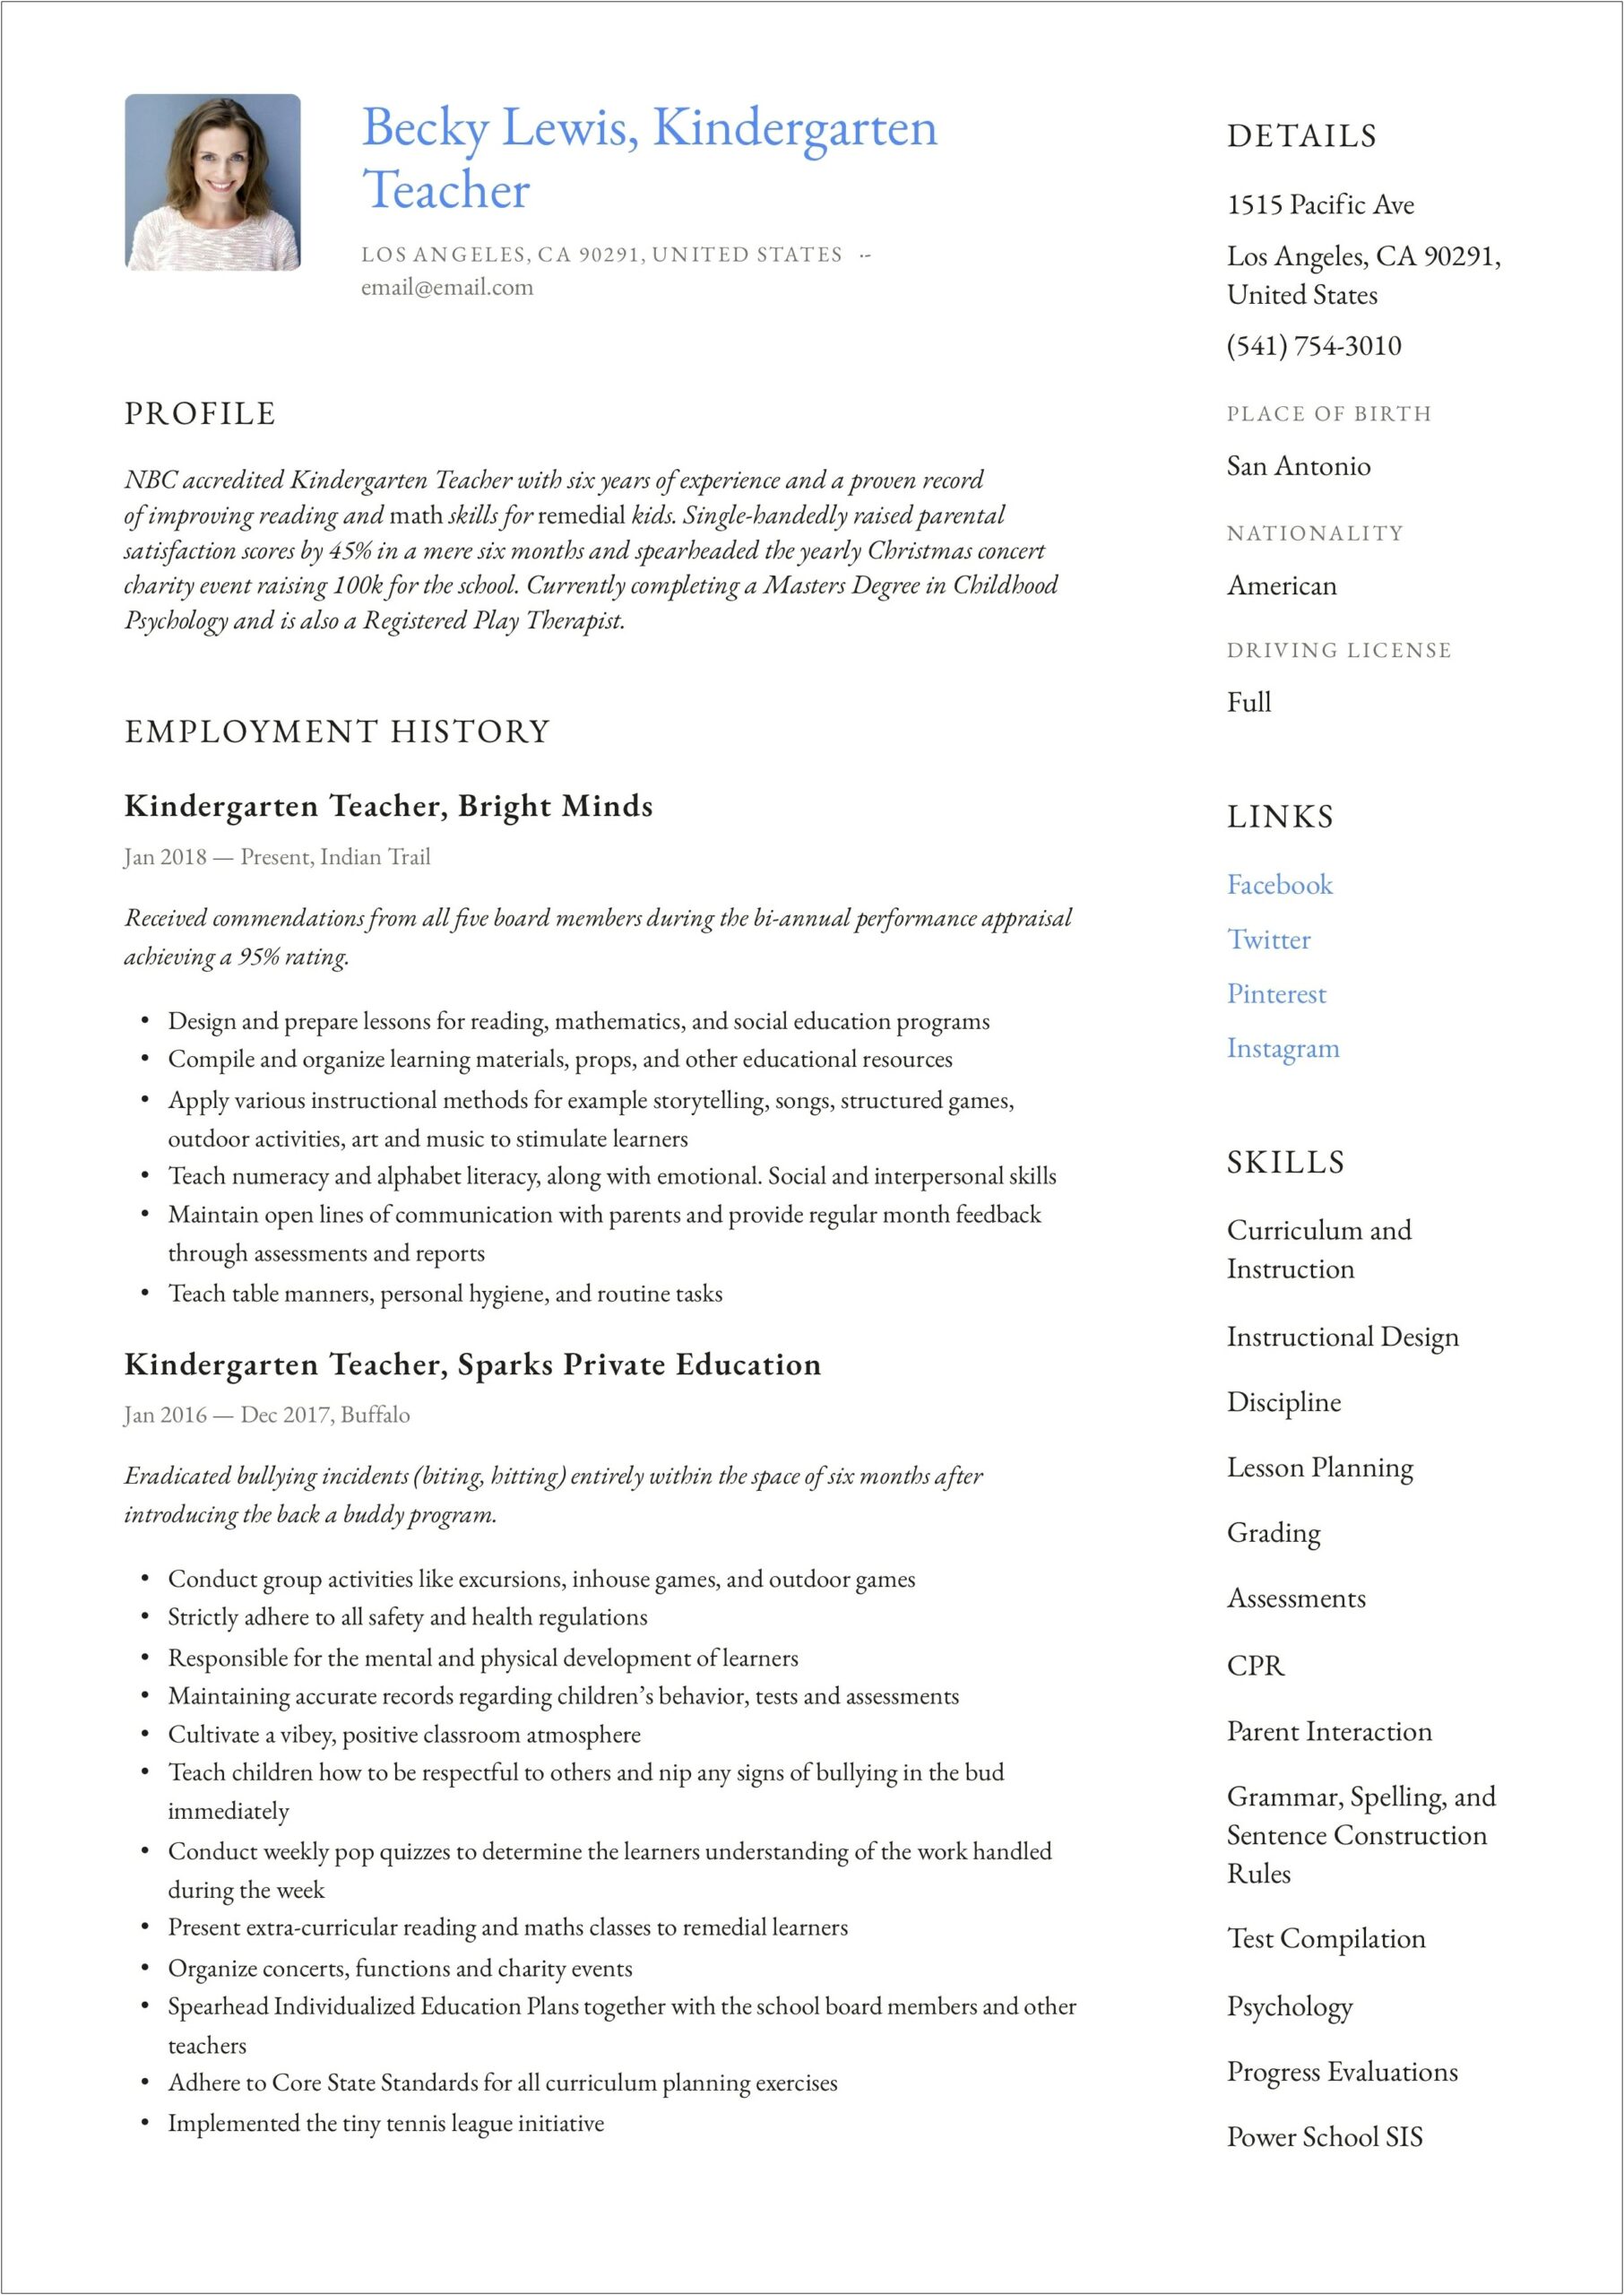 Kindergarten Teacher Job Responsibilities For Resume